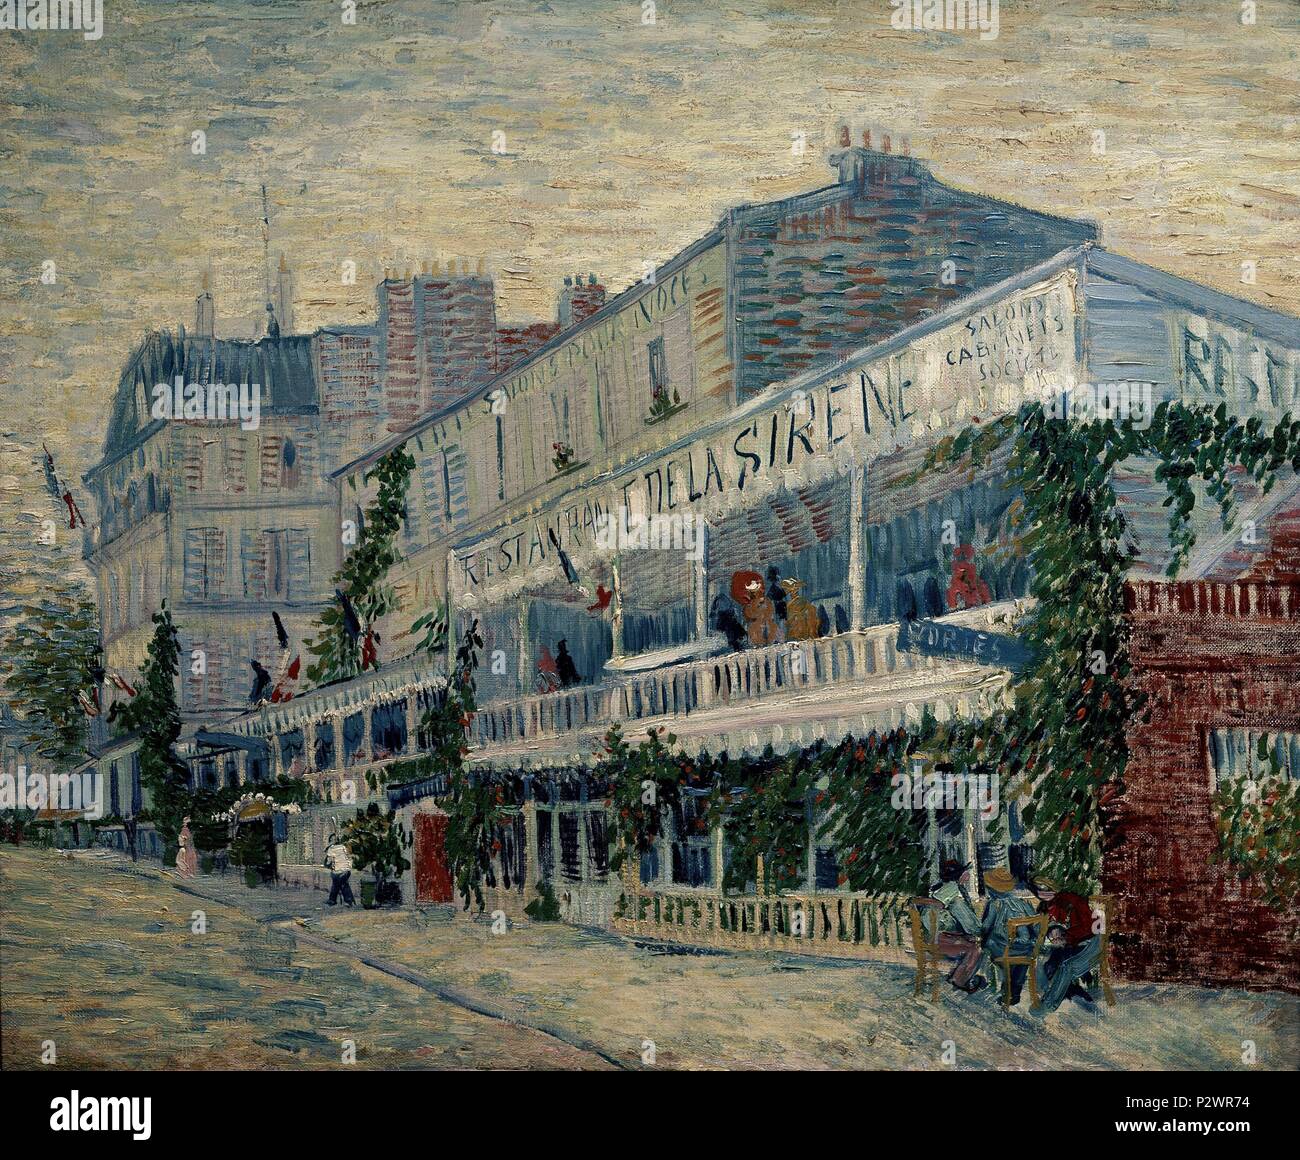 Das Restaurant de la Sirene in Asnières - 1887 - 54x65 cm, Öl auf Leinwand. Autor: Vincent van Gogh (1853-1890). Ort: Musée d'Orsay. Auch als: RESTAURANTE DE LA SIRENA EN ASNIERES bekannt. Stockfoto